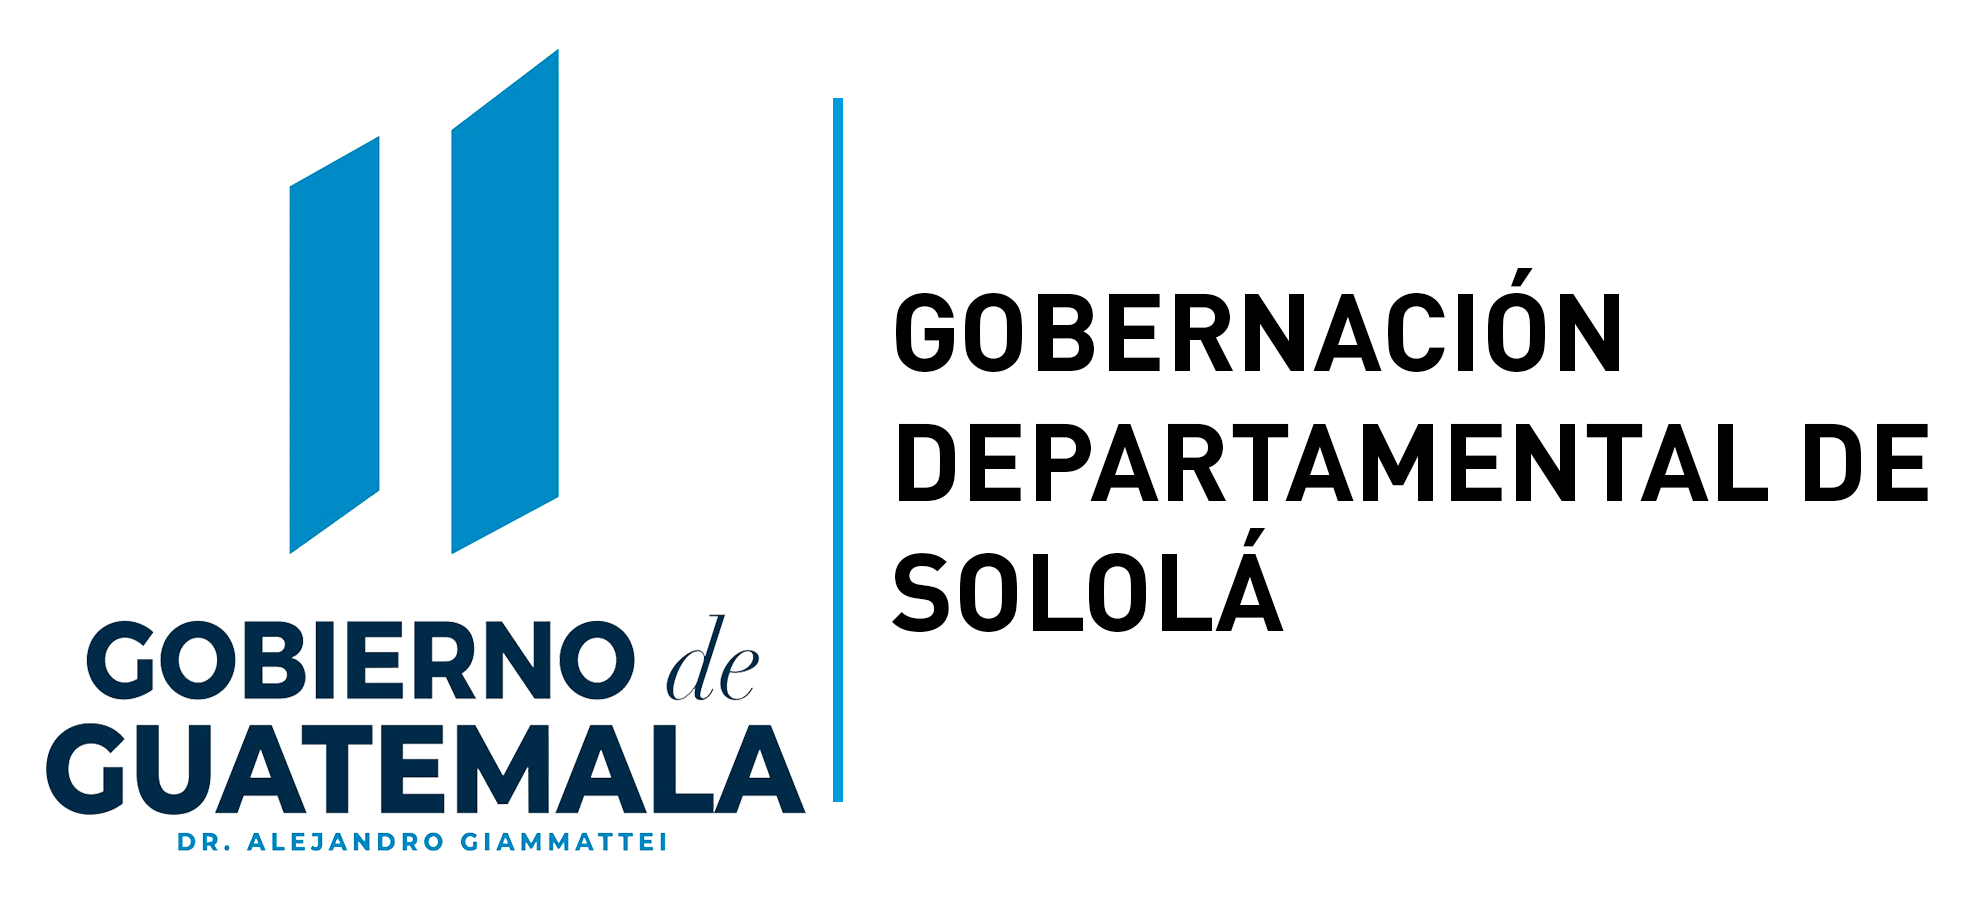 Gobernación Departamental de Sololá